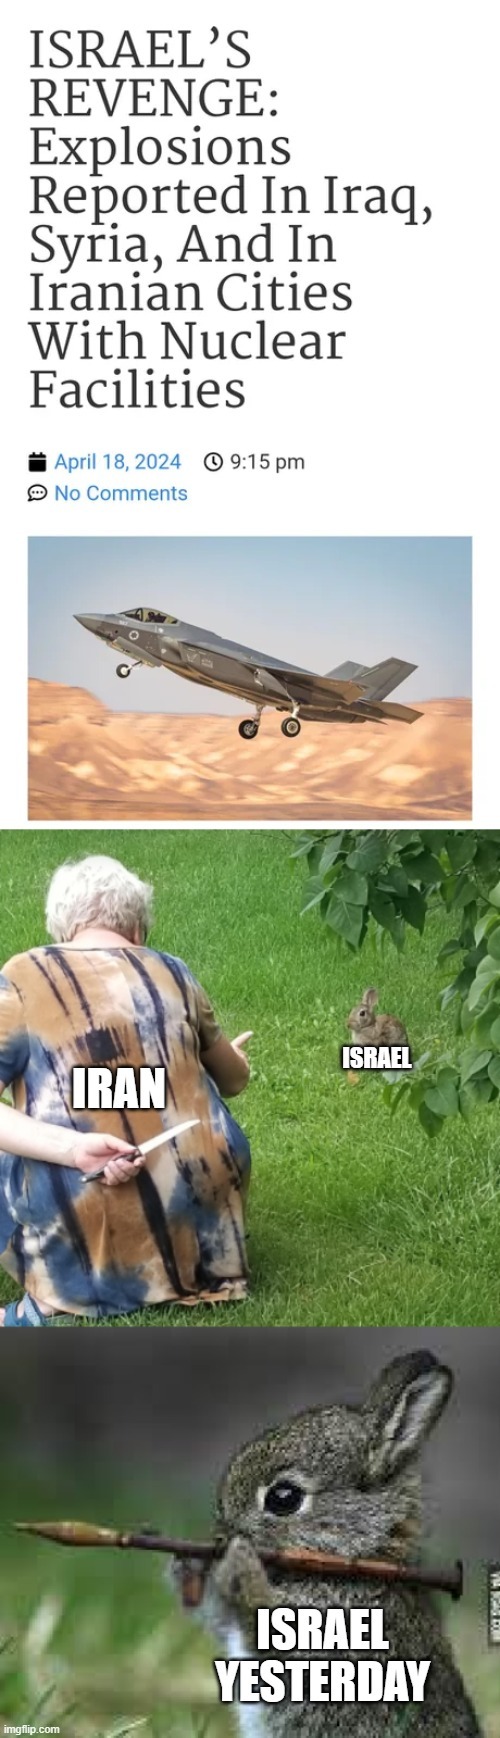 Israel attacks Iran meme